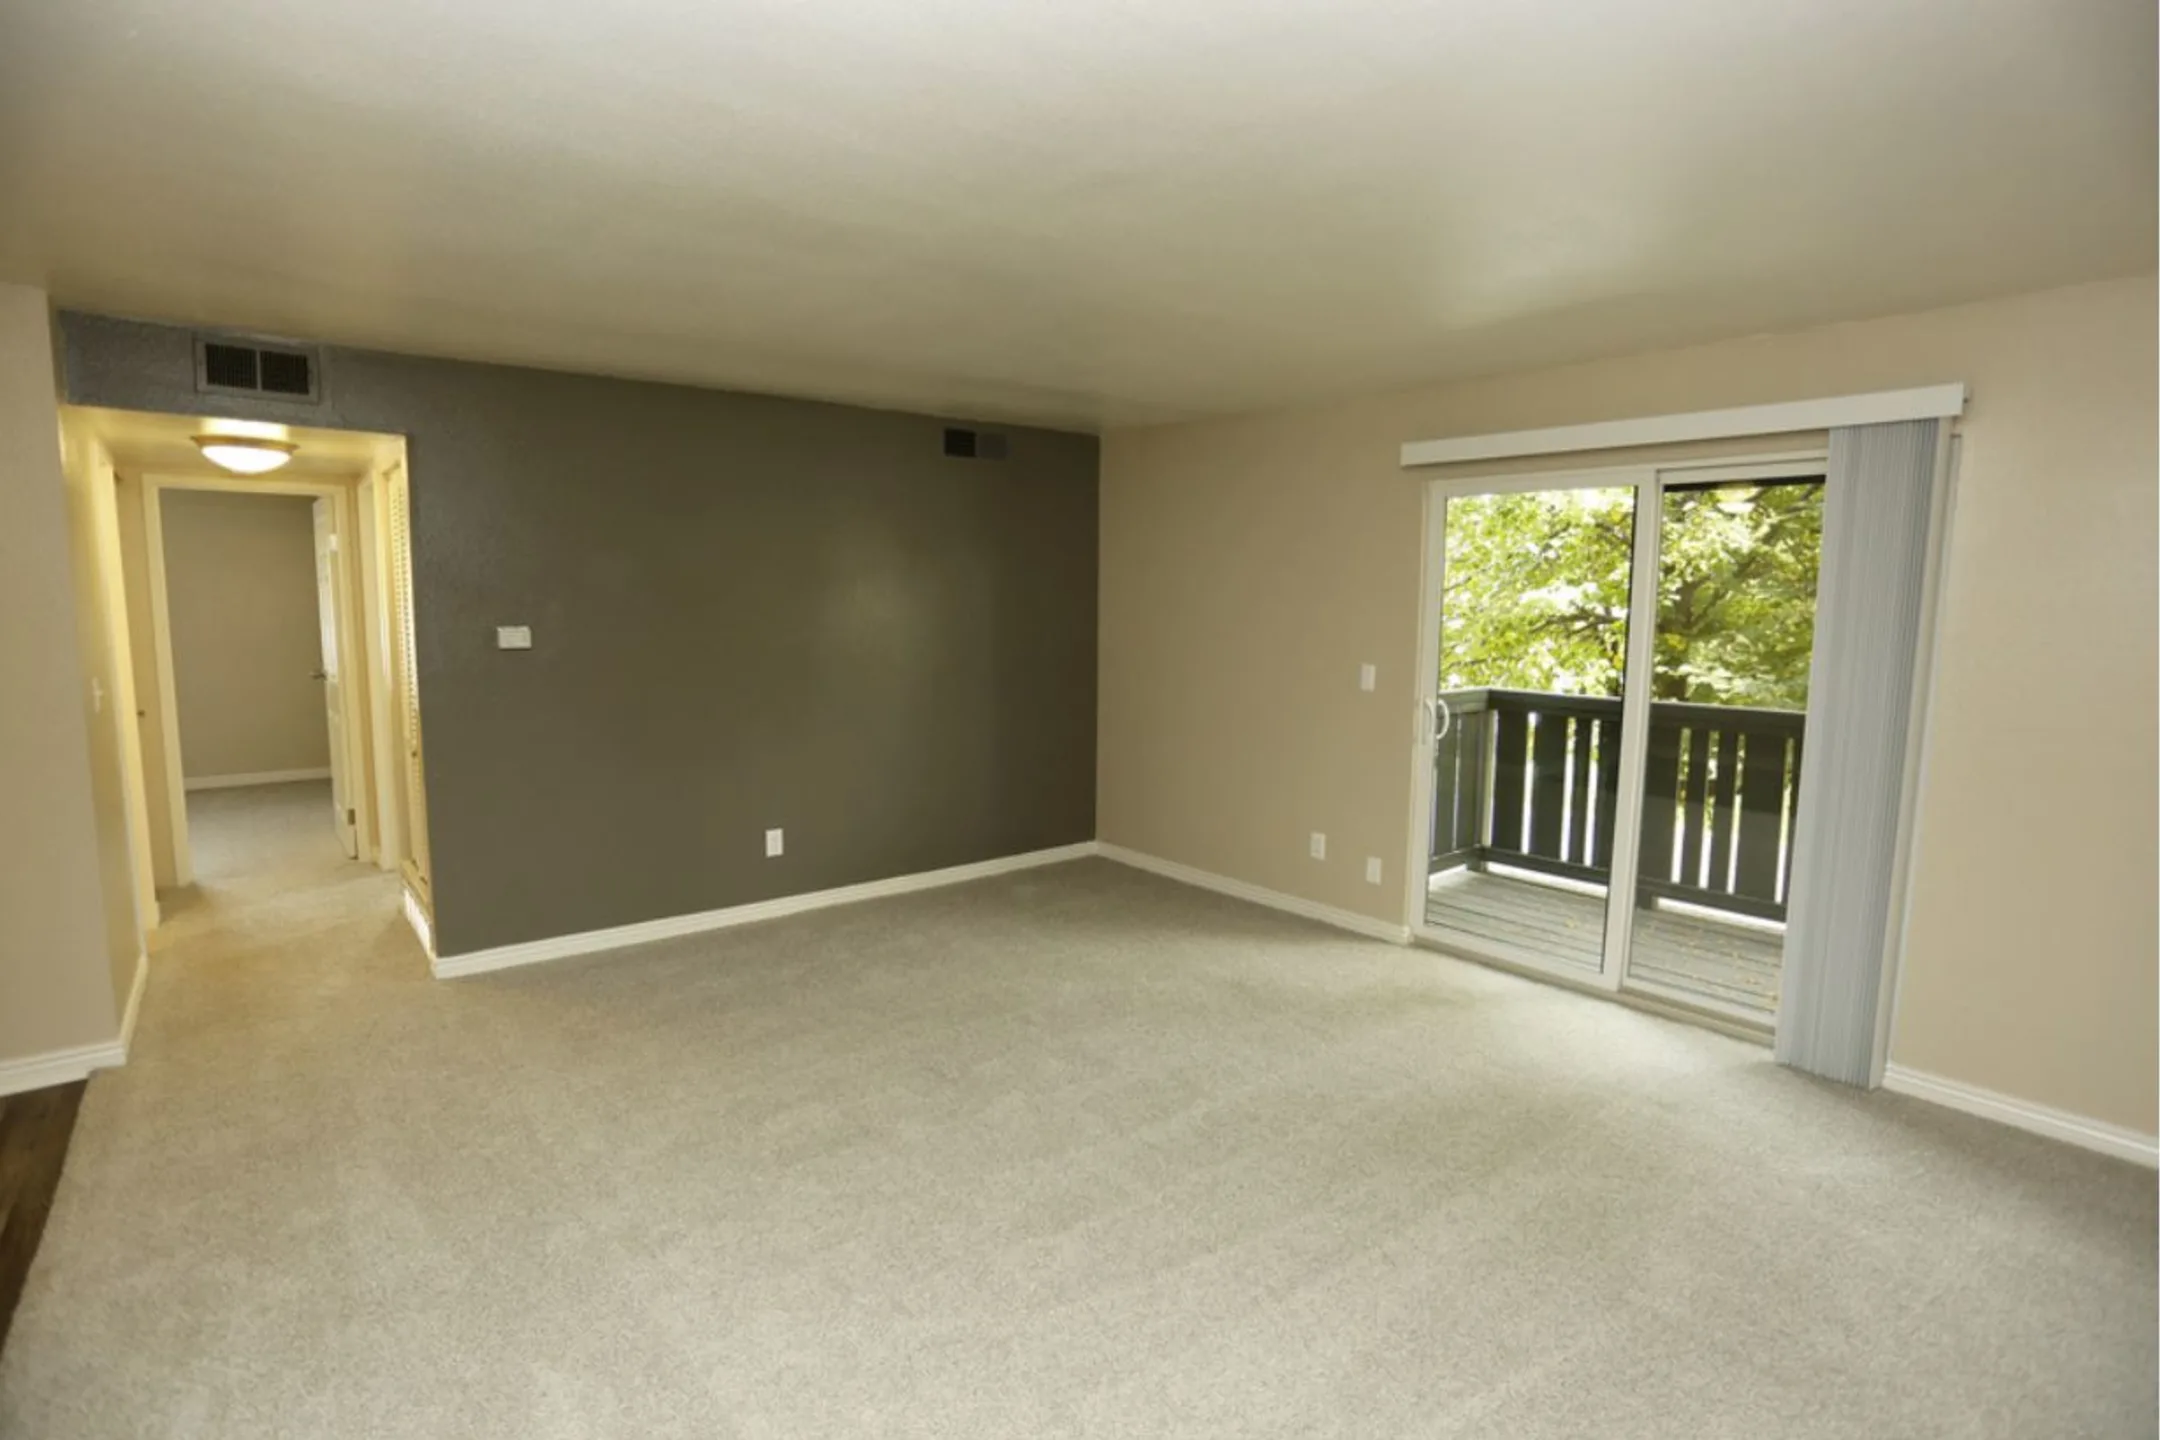 Living Room - Aspenleaf Apartments - Fort Collins, CO